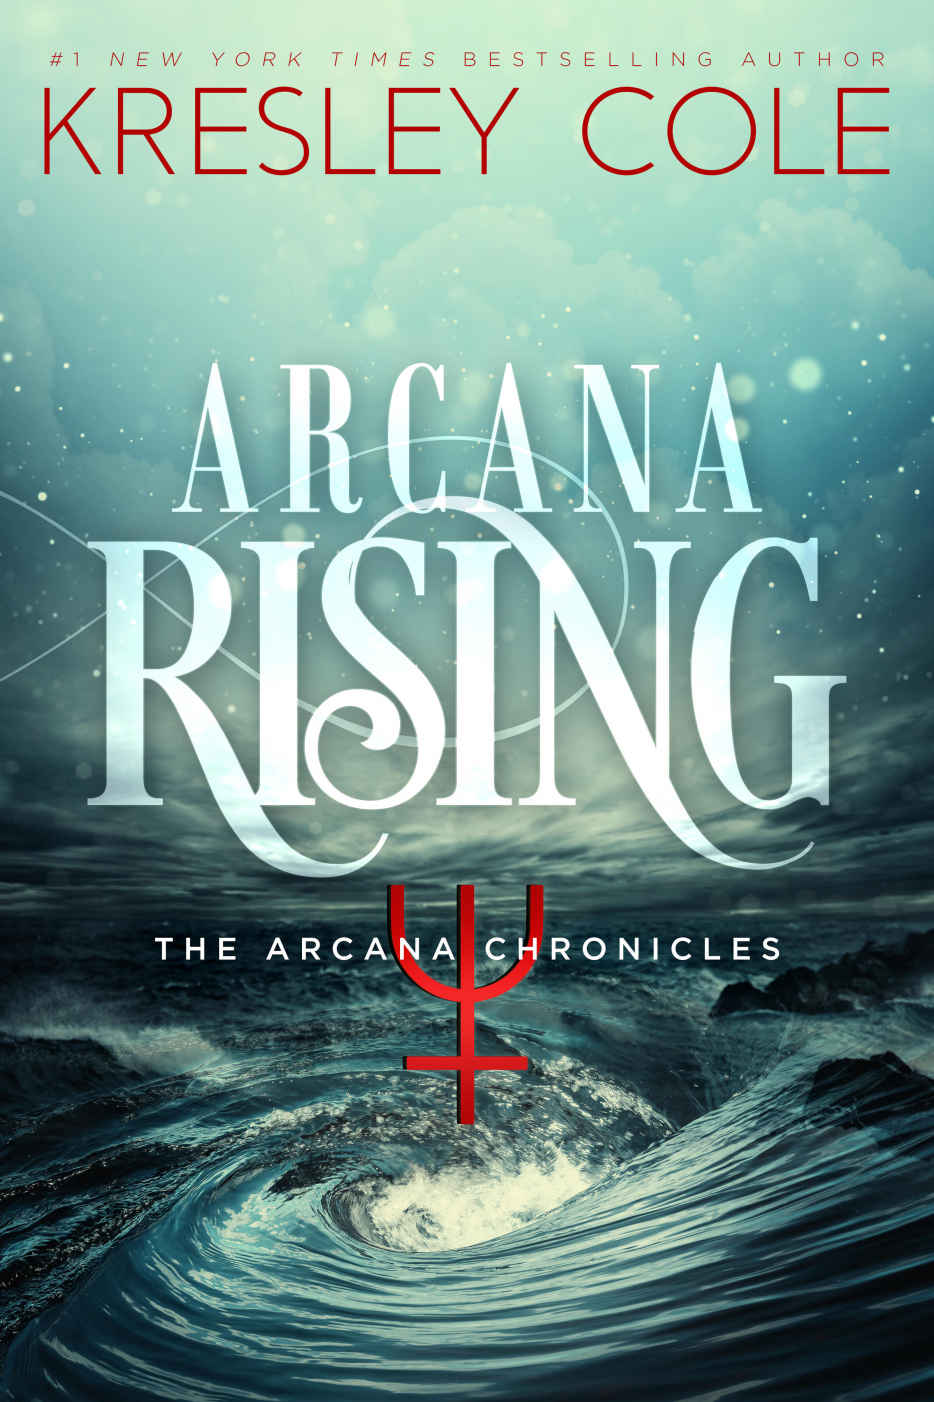 Arcana Rising (The Arcana Chronicles Book 5) by Kresley Cole